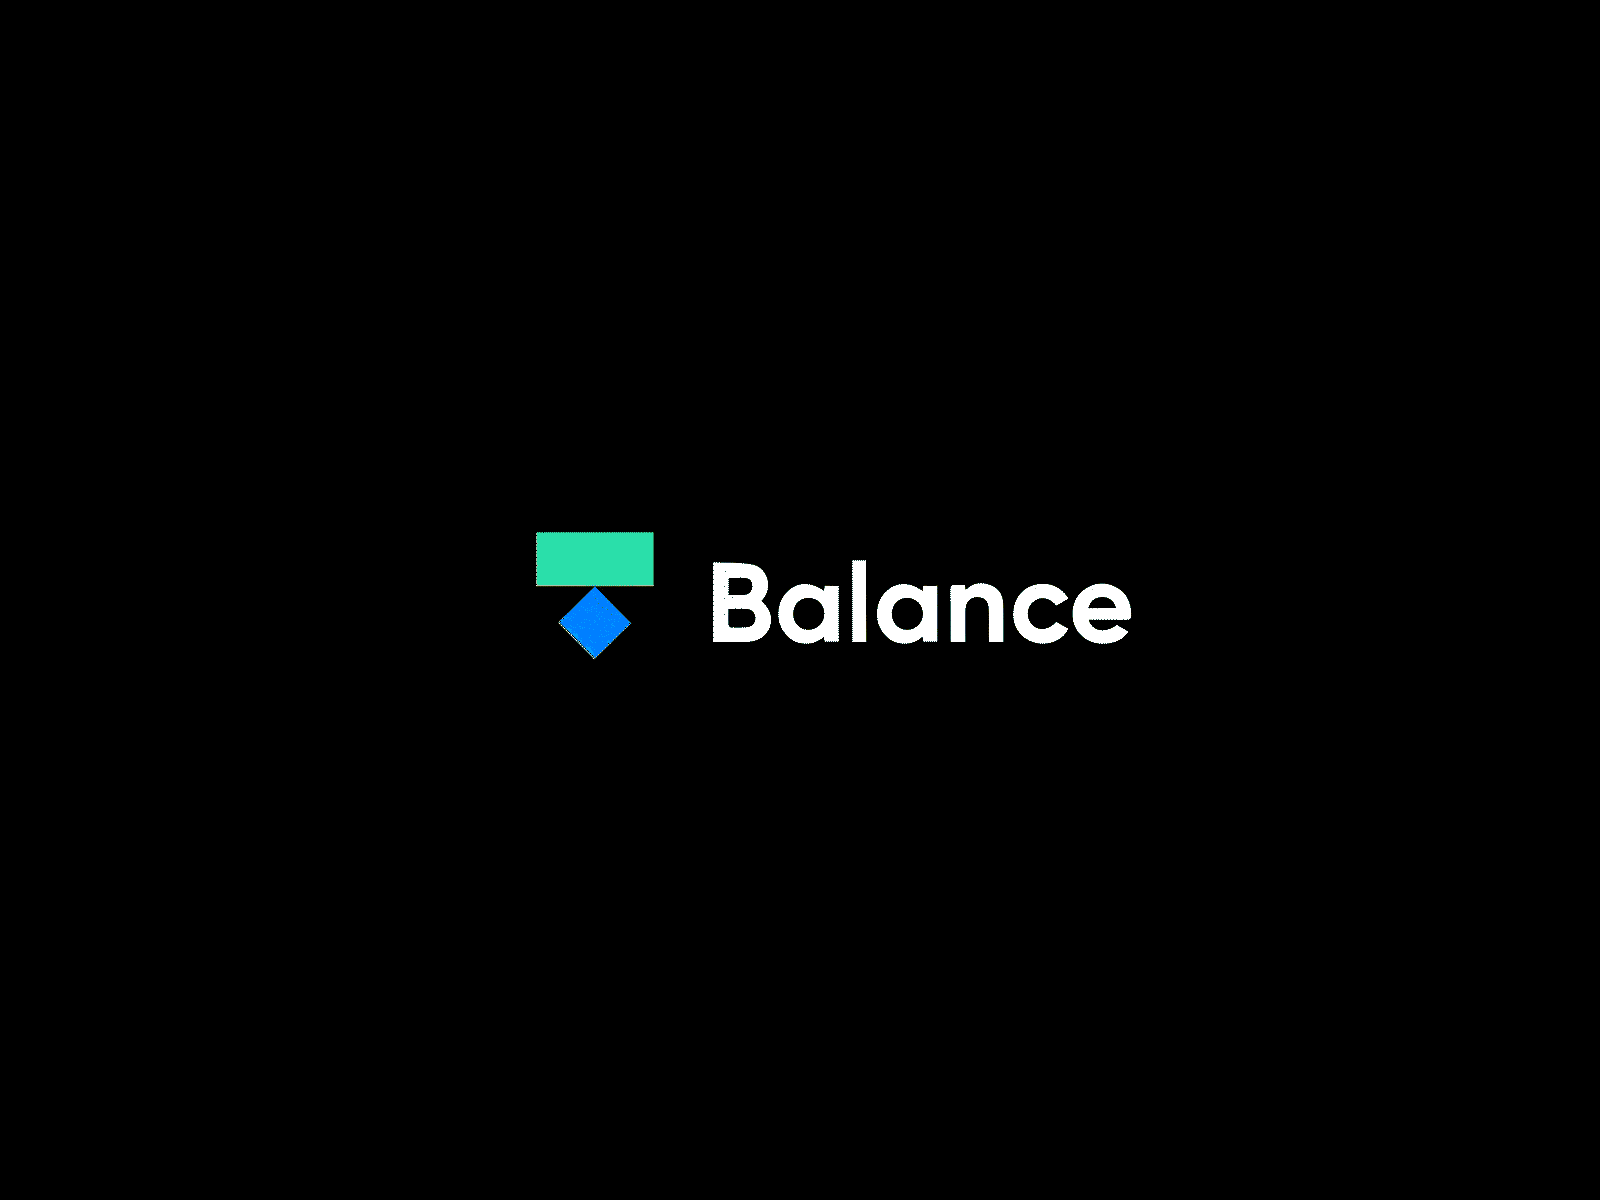 "Balance" Logo Animation